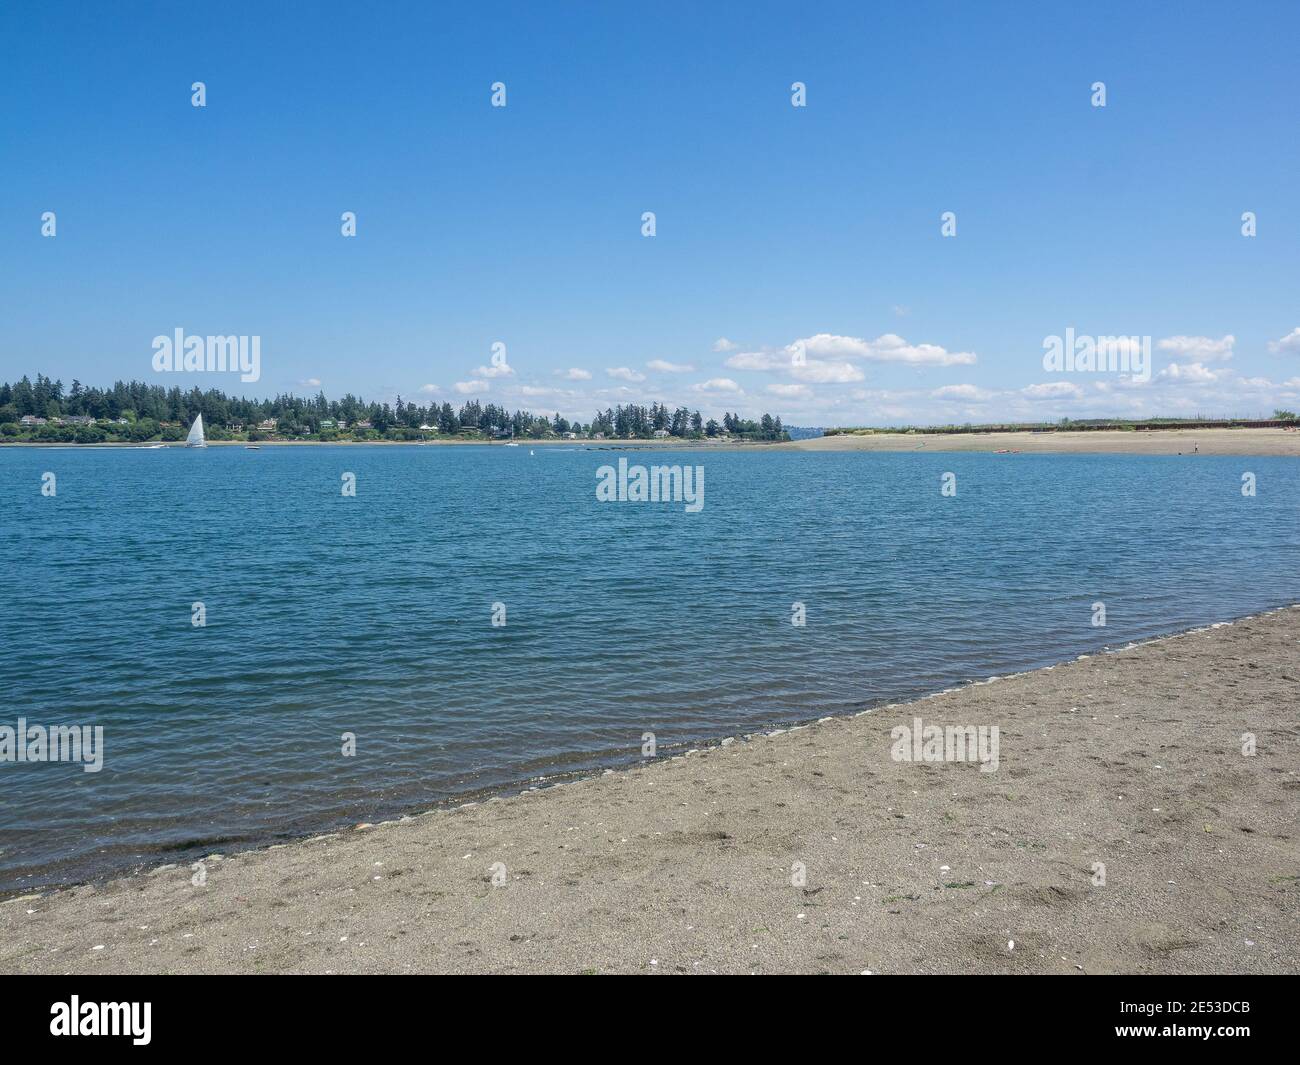 Pritchard Park es un sitio de limpieza ambiental Superfund de 50 acres (20 ha) en la orilla del Eagle Harbor de Bainbridge Island en el estado de Washington. Foto de stock